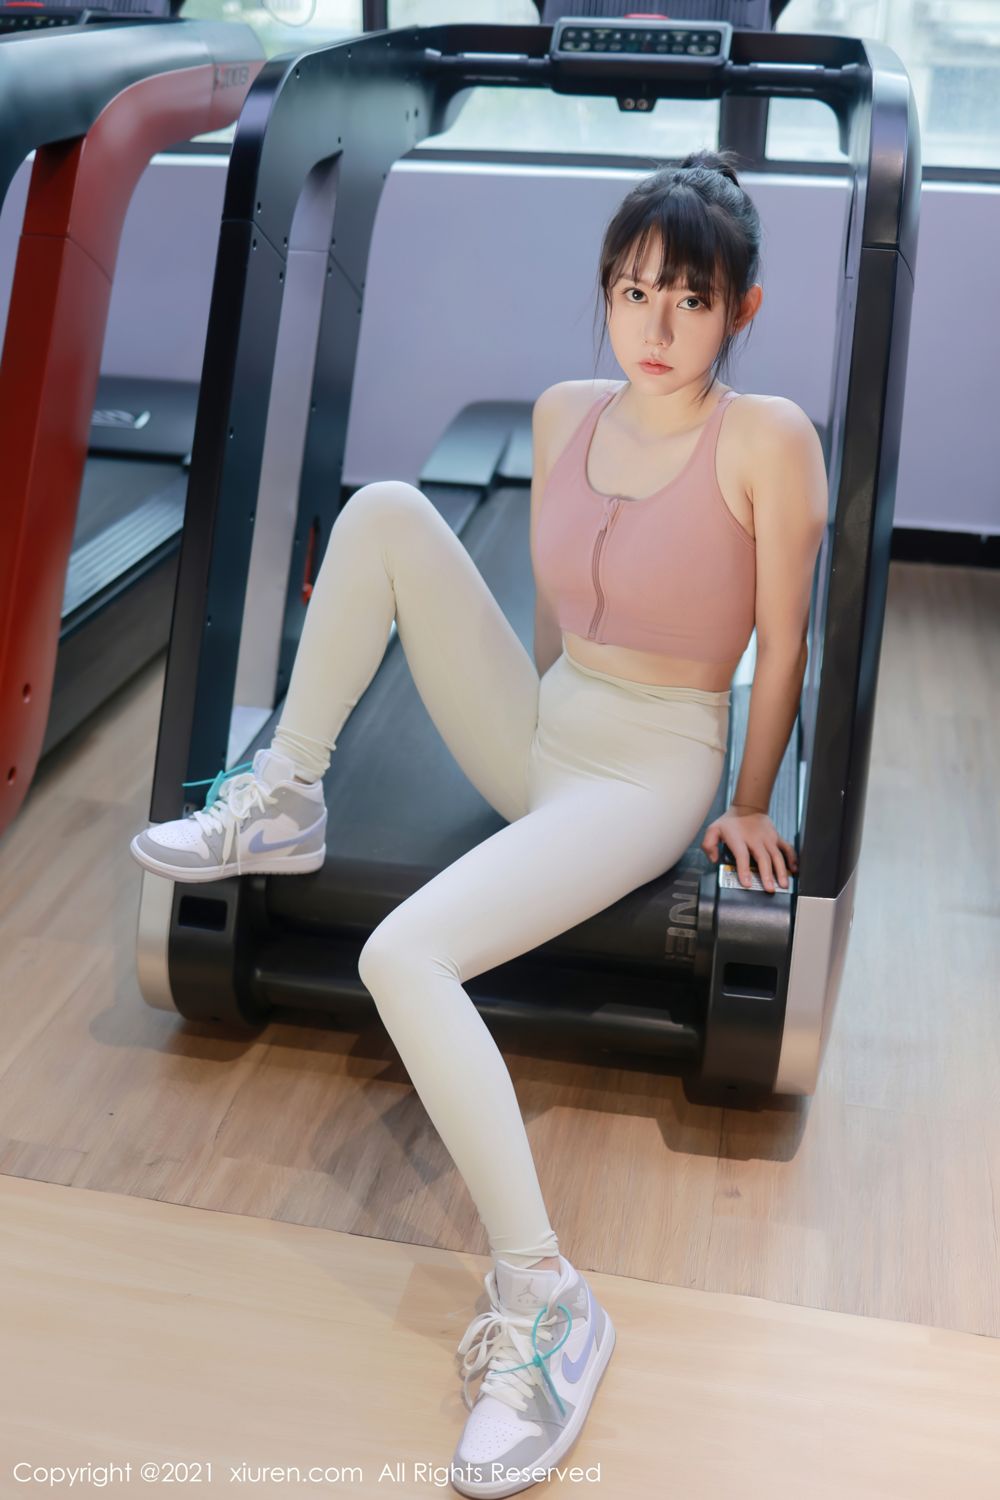 性感漂亮粉嫩美女韩希蕾紧身运动衣白裤健身房锻炼显翘臀有致身段写真套图图片